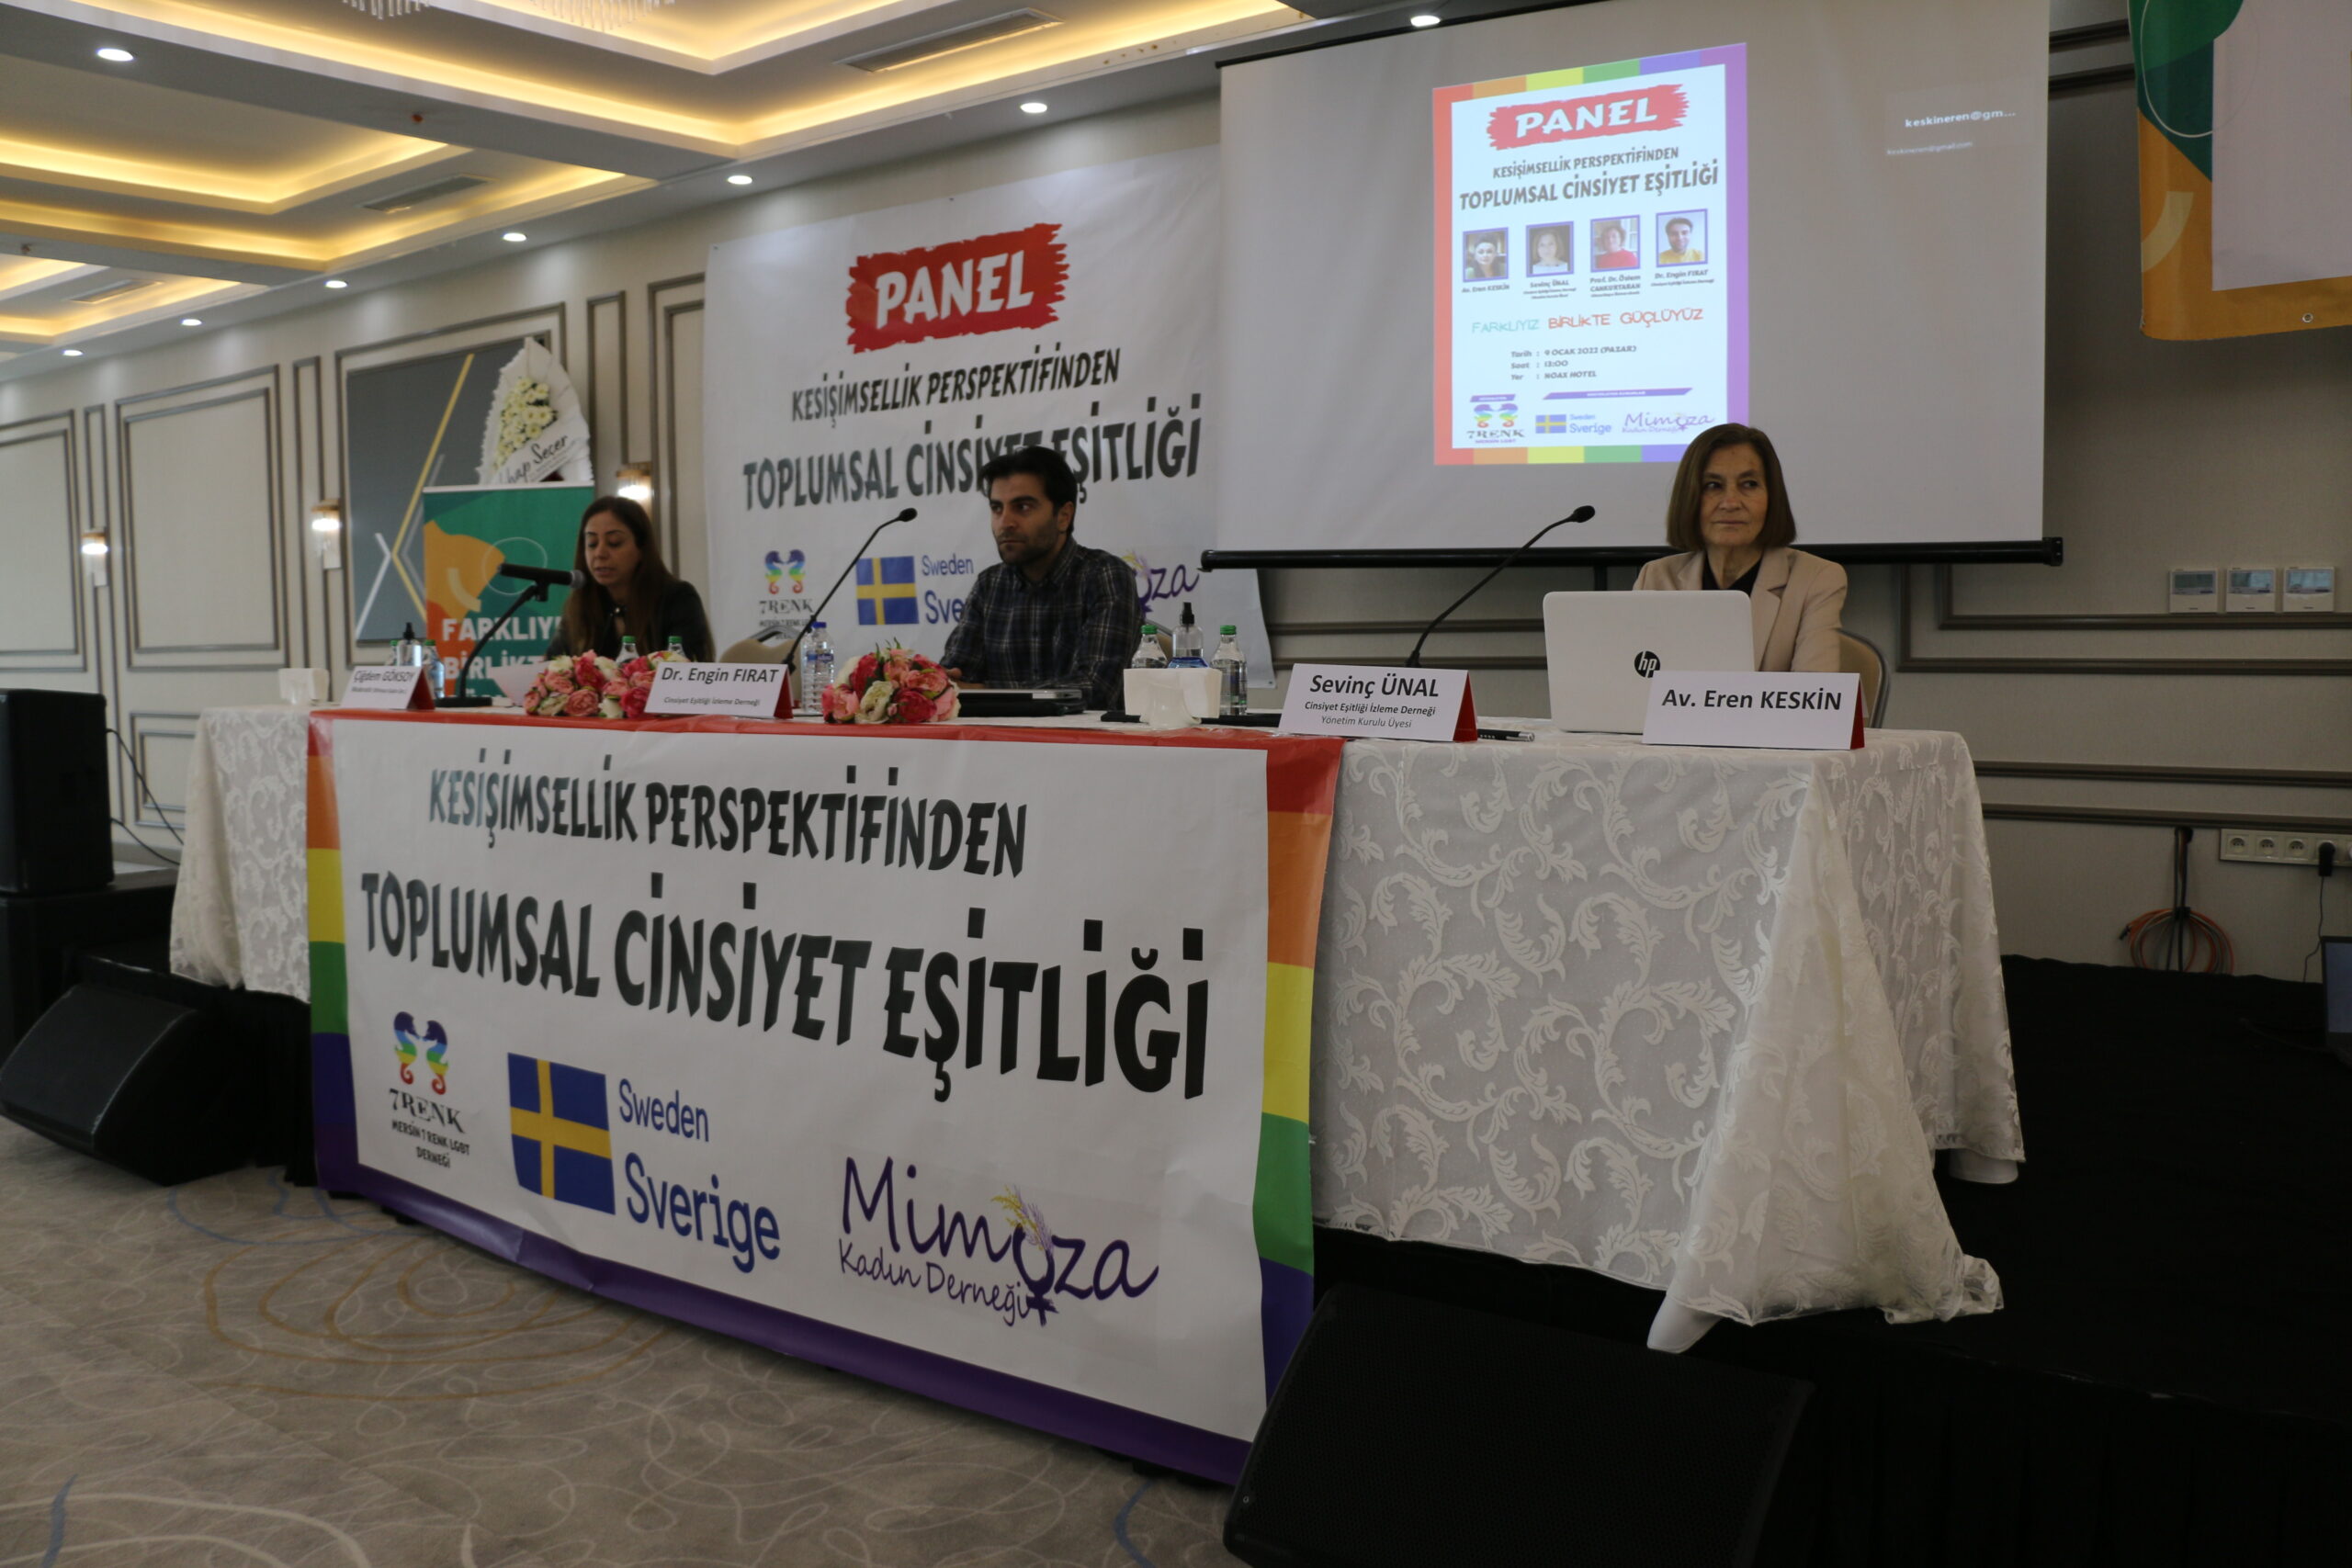 Mersin’de ‘Kesişimsellik Perspektifinden Toplumsal Cinsiyet Eşitliği’ konulu panel düzenlendi